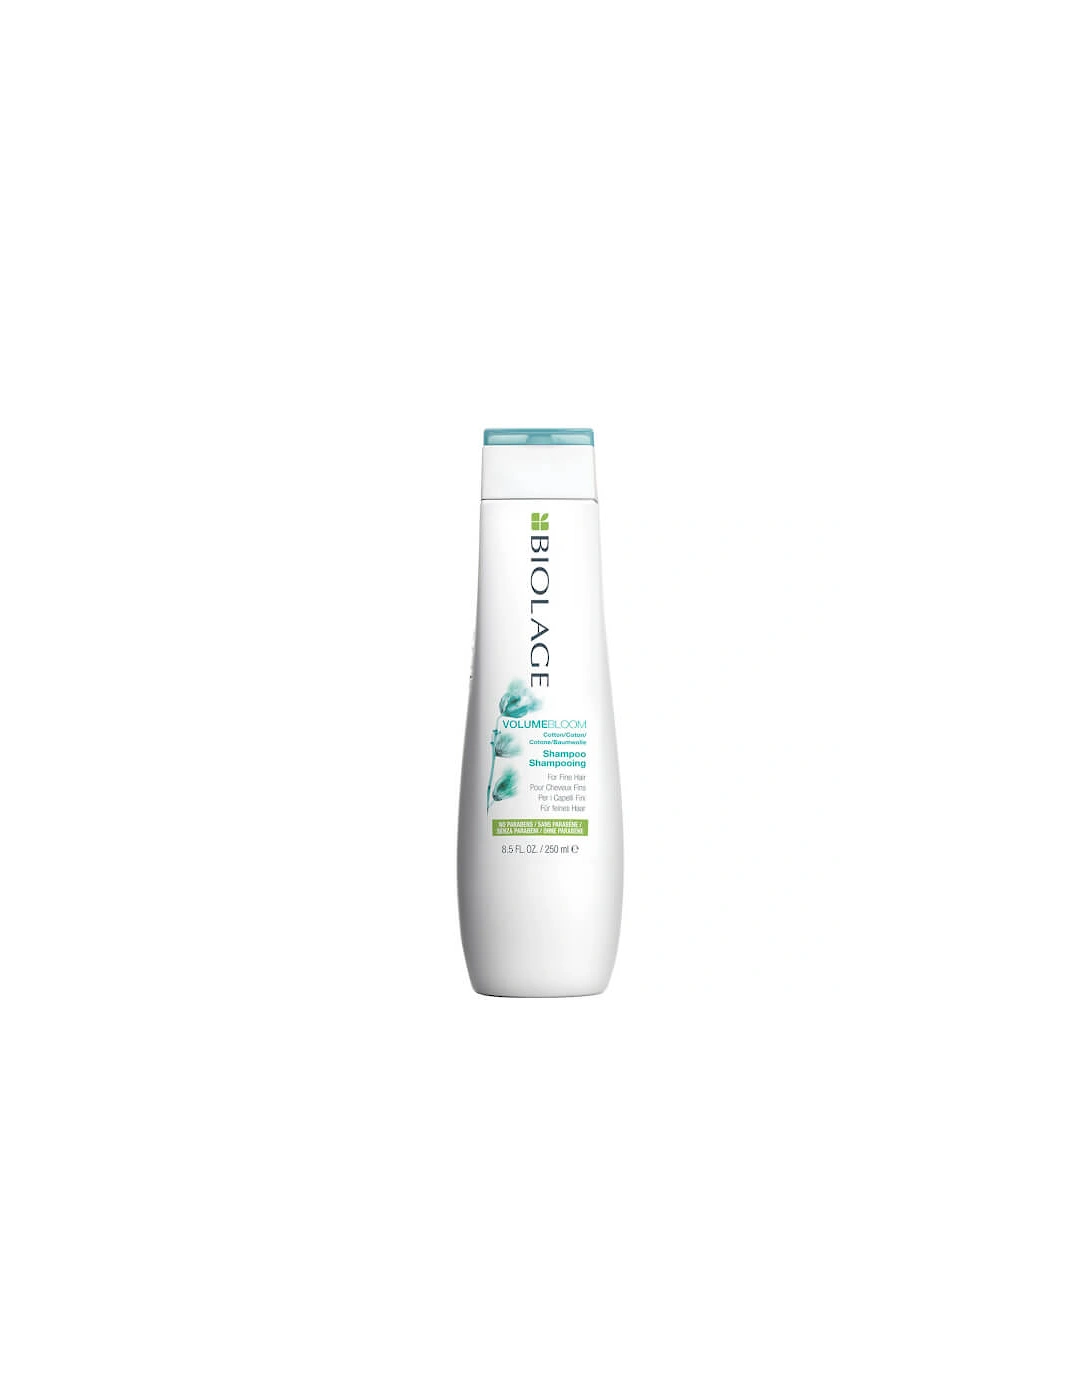 VolumeBloom Volumising Shampoo for Fine Hair 250ml - Biolage, 2 of 1